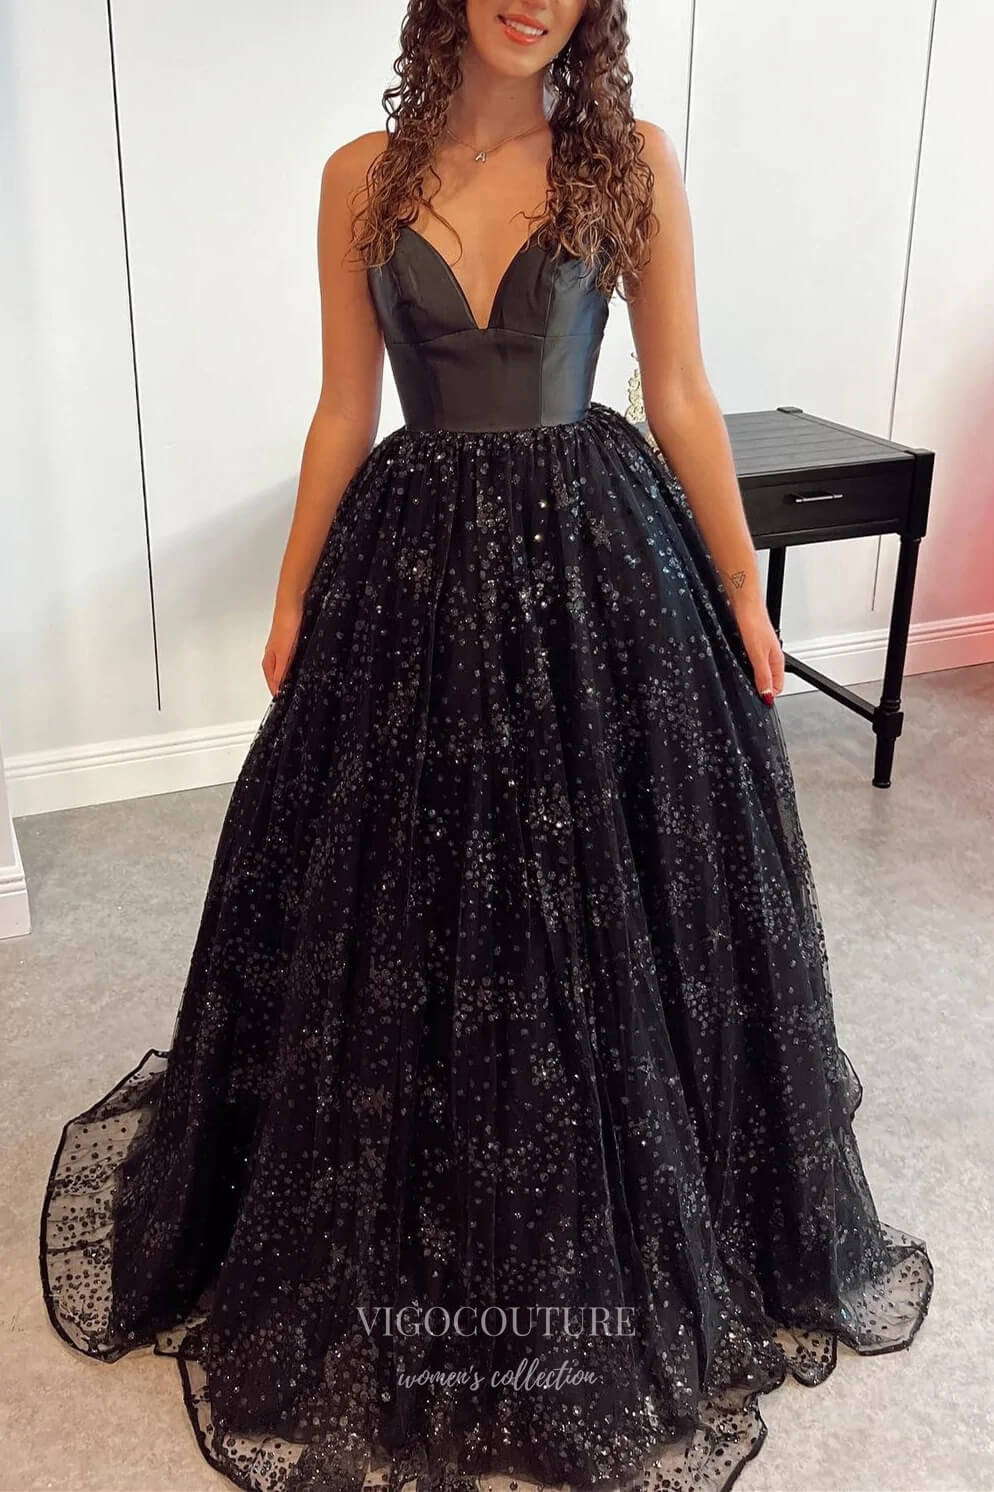 Kylie Jenner Dresses as Kris Jenner in Black Sequin Dress | POPSUGAR Fashion